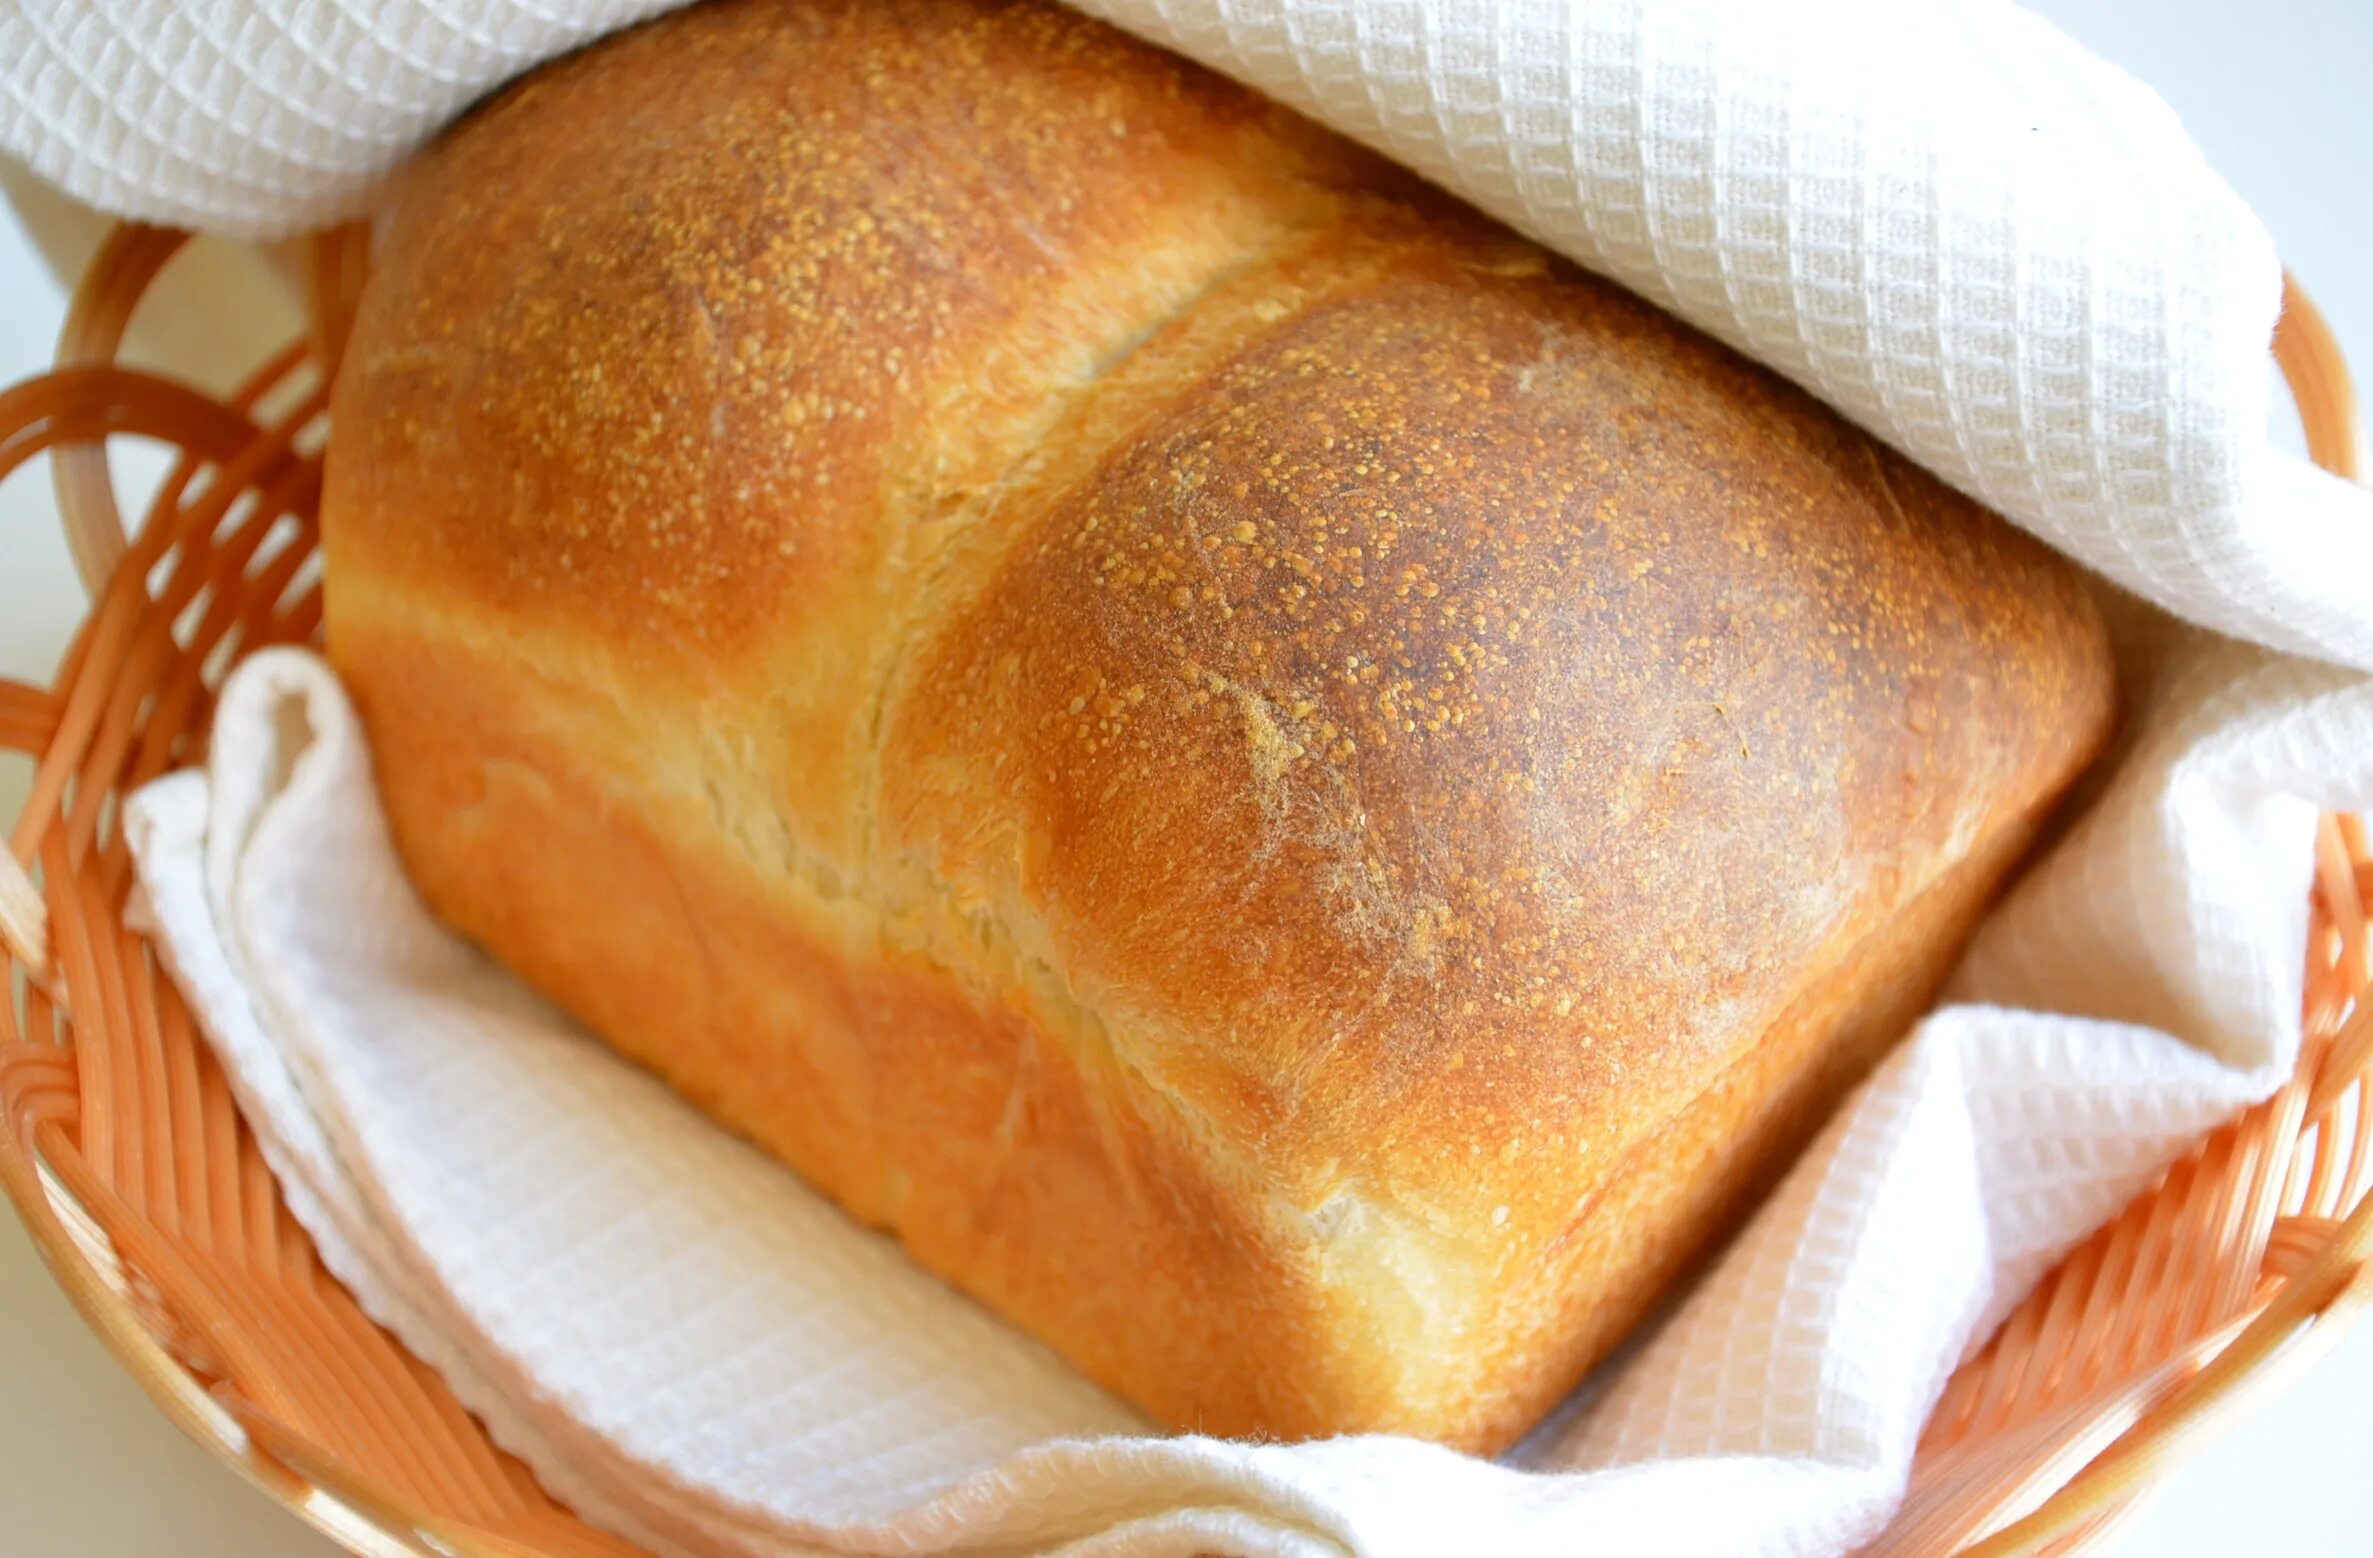 Булочки на опаре. Раздан хлеб. Армянский хлеб Hrazdan. Ситный хлеб. Ситник хлеб.